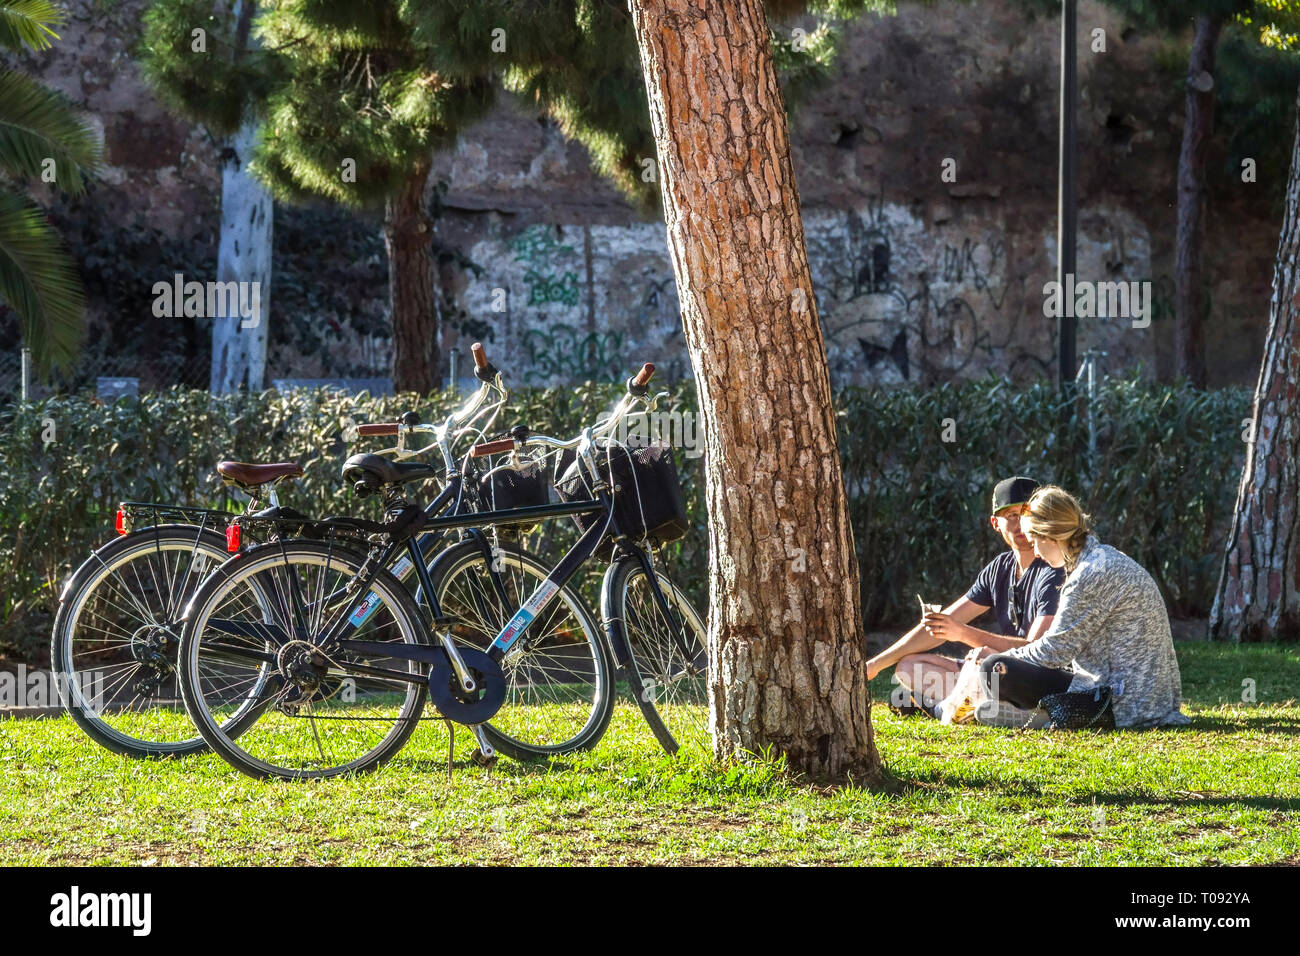 Ein Paar, Leute, die sich unter Bäumen entspannen, Fahrräder parken an der Kiefer, Valencia Turia Gärten, Spanien Fahrrad Stadt Freunde im Park mit Fahrrad, Rasen Stockfoto